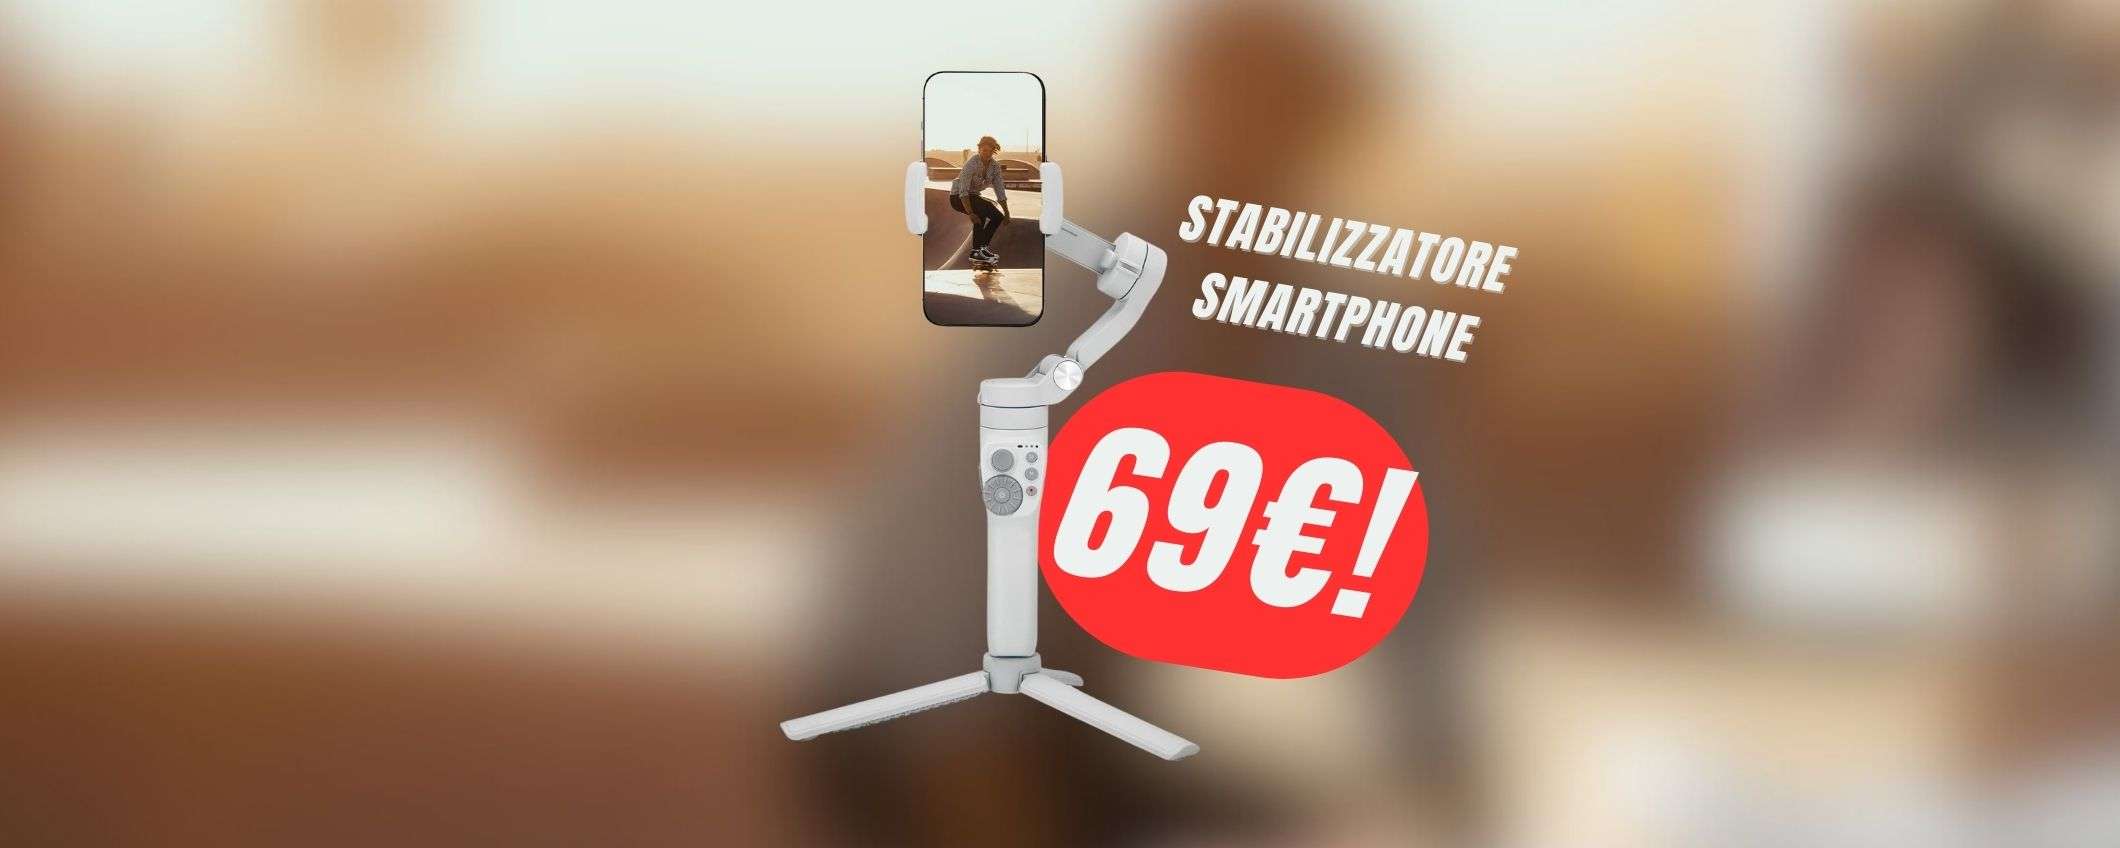 Video super-stabili con soli 69€: tutto grazie al GIMBAL per smartphone in offerta!